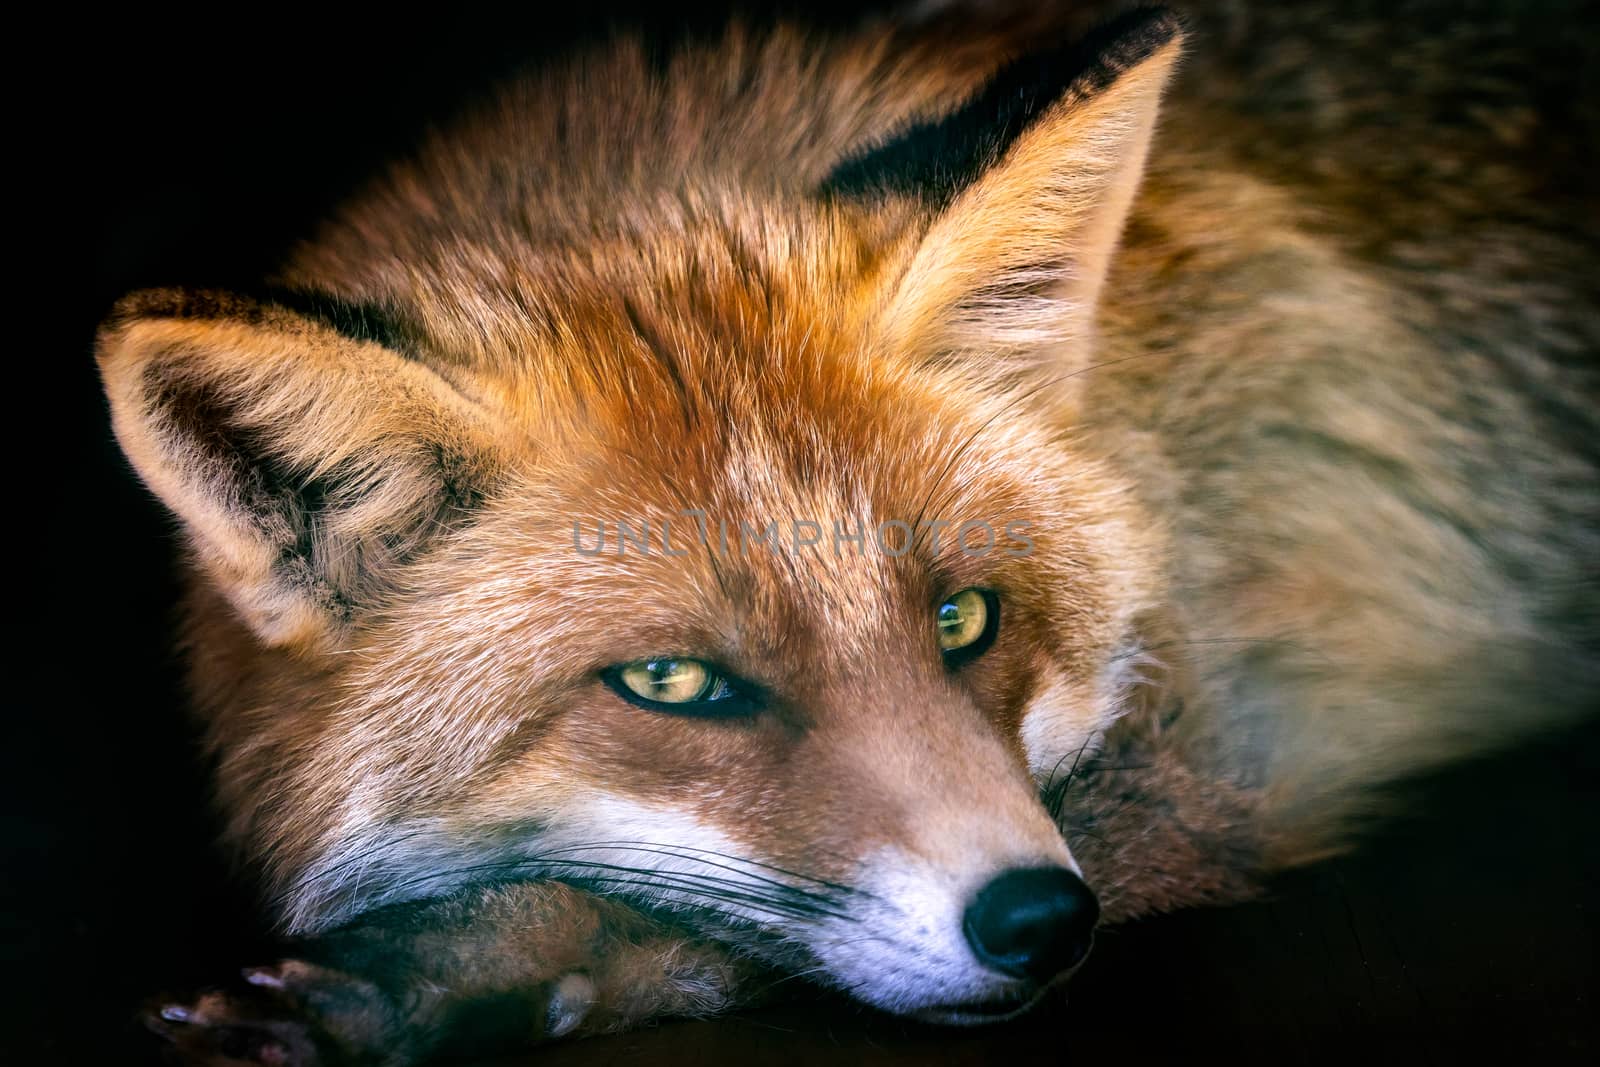 European Red Fox (Vulpes vulpes) by xtrekx